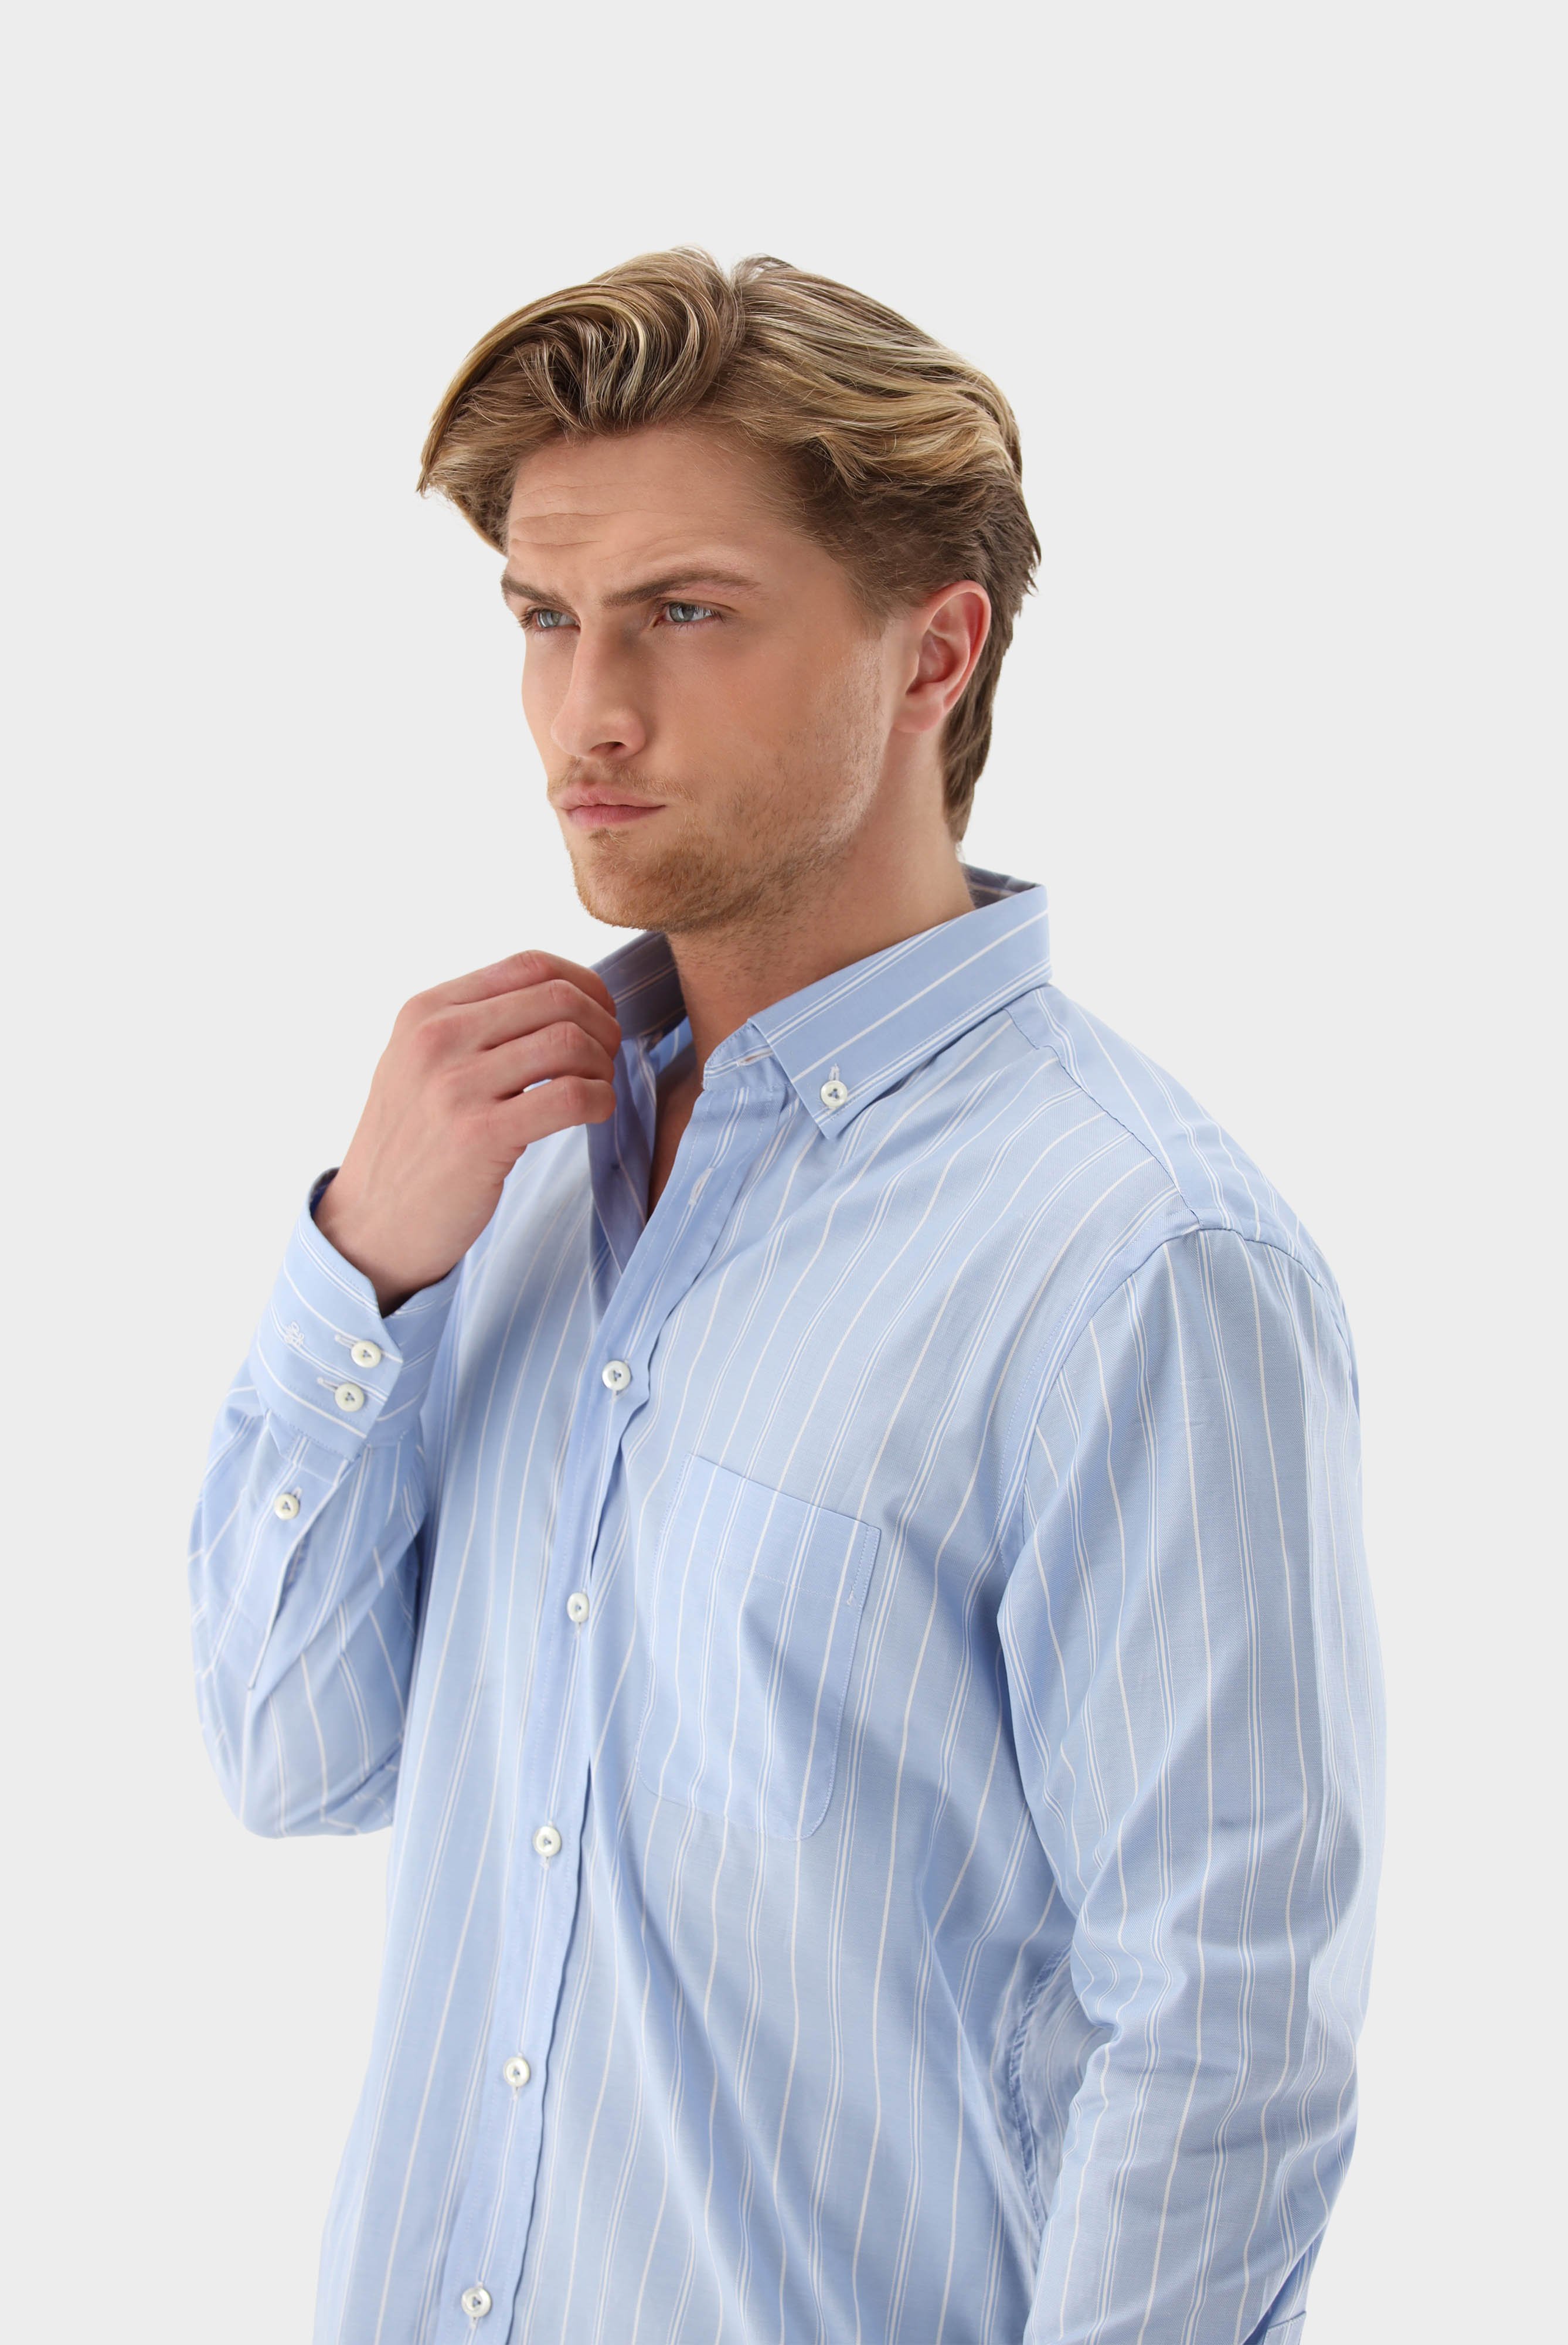 Casual Shirts+Striped Oxford Shirt Slim Fit+20.2012.AV.161068.730.38